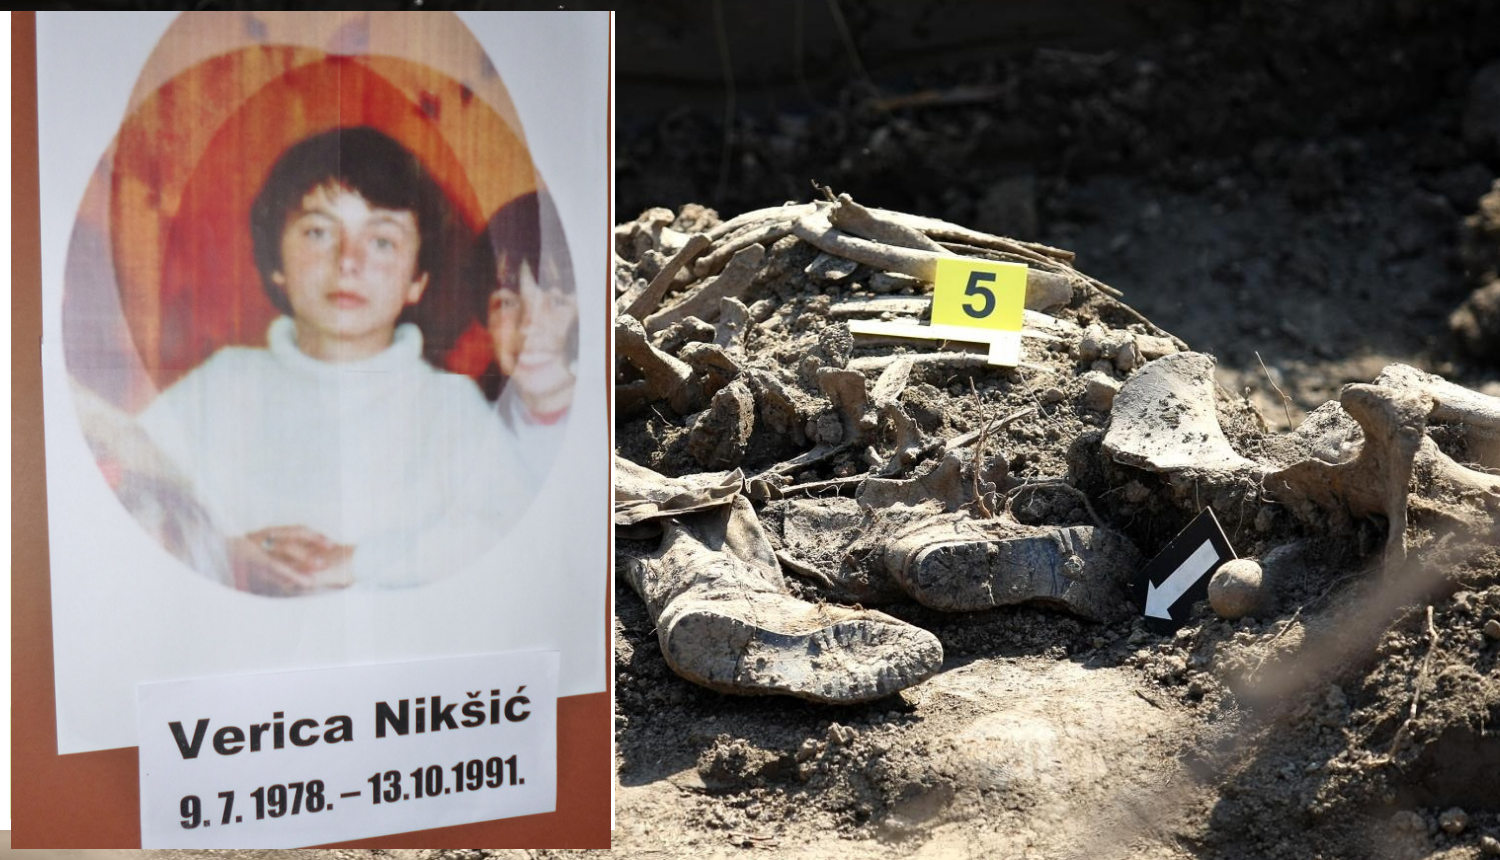 Verica je imala samo 13 godina, najmlađa je žrtva četničkog pokolja u selu blizu Gospića